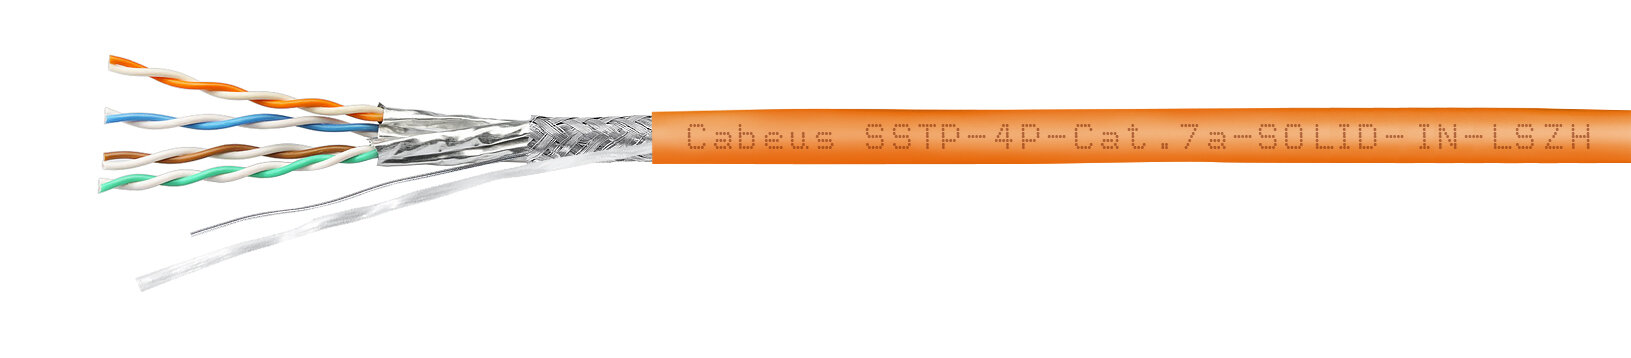 Cabeus SSTP-4P-Cat.7a-SOLID-IN-LSZH Кабель экранированная витая пара SSTP (S/FTP), категория 7a (расширенный диапазон рабочих частот до 1000MHz), 4 пары (23 AWG), одножильный (solid), LSZH (305 м)